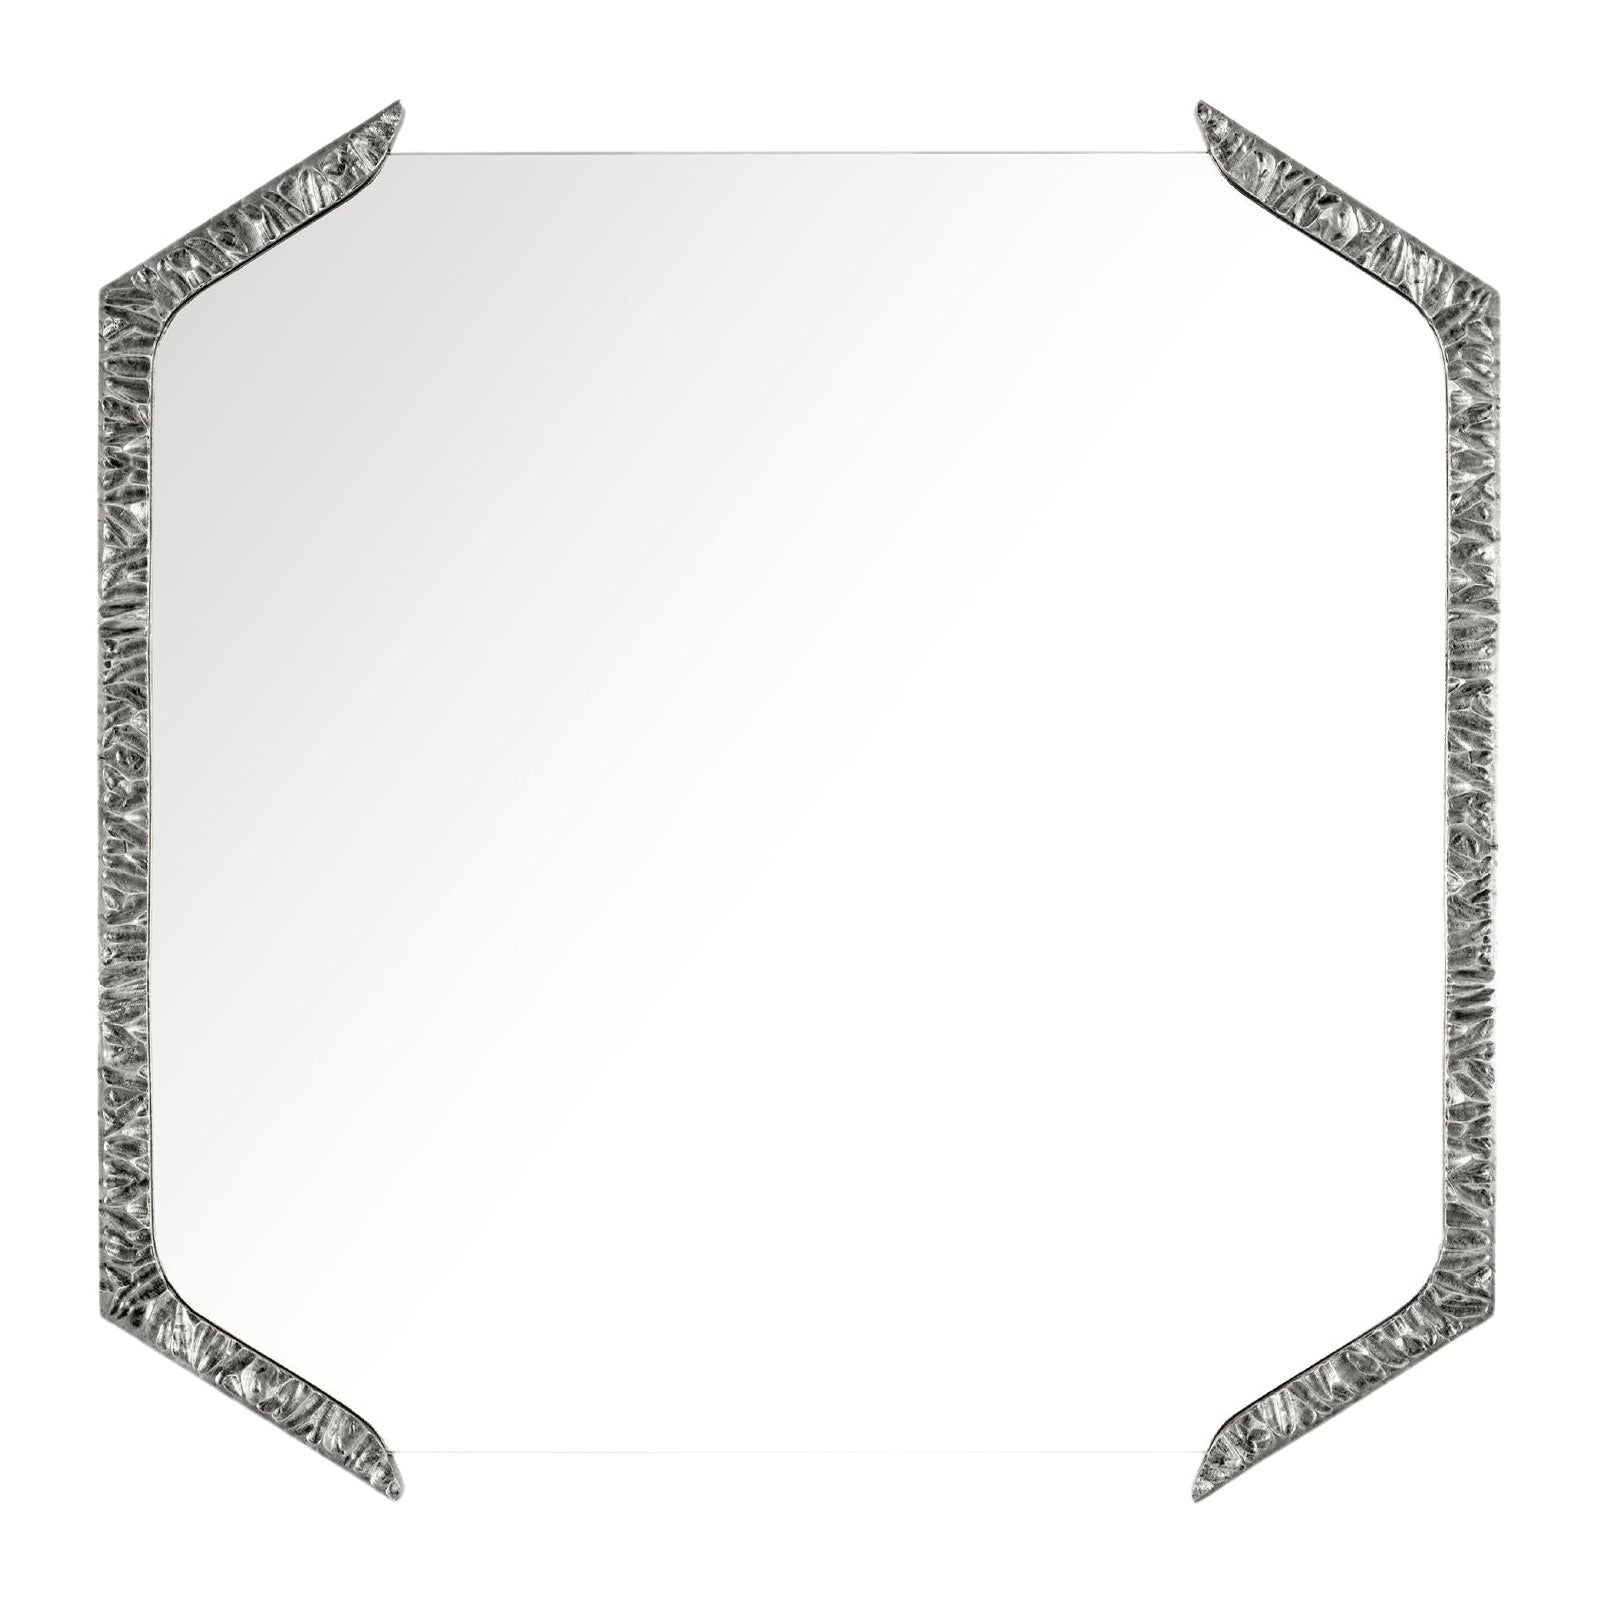 Alentejo Square Mirror, Nickel, InsidherLand by Joana Santos Barbosa For Sale